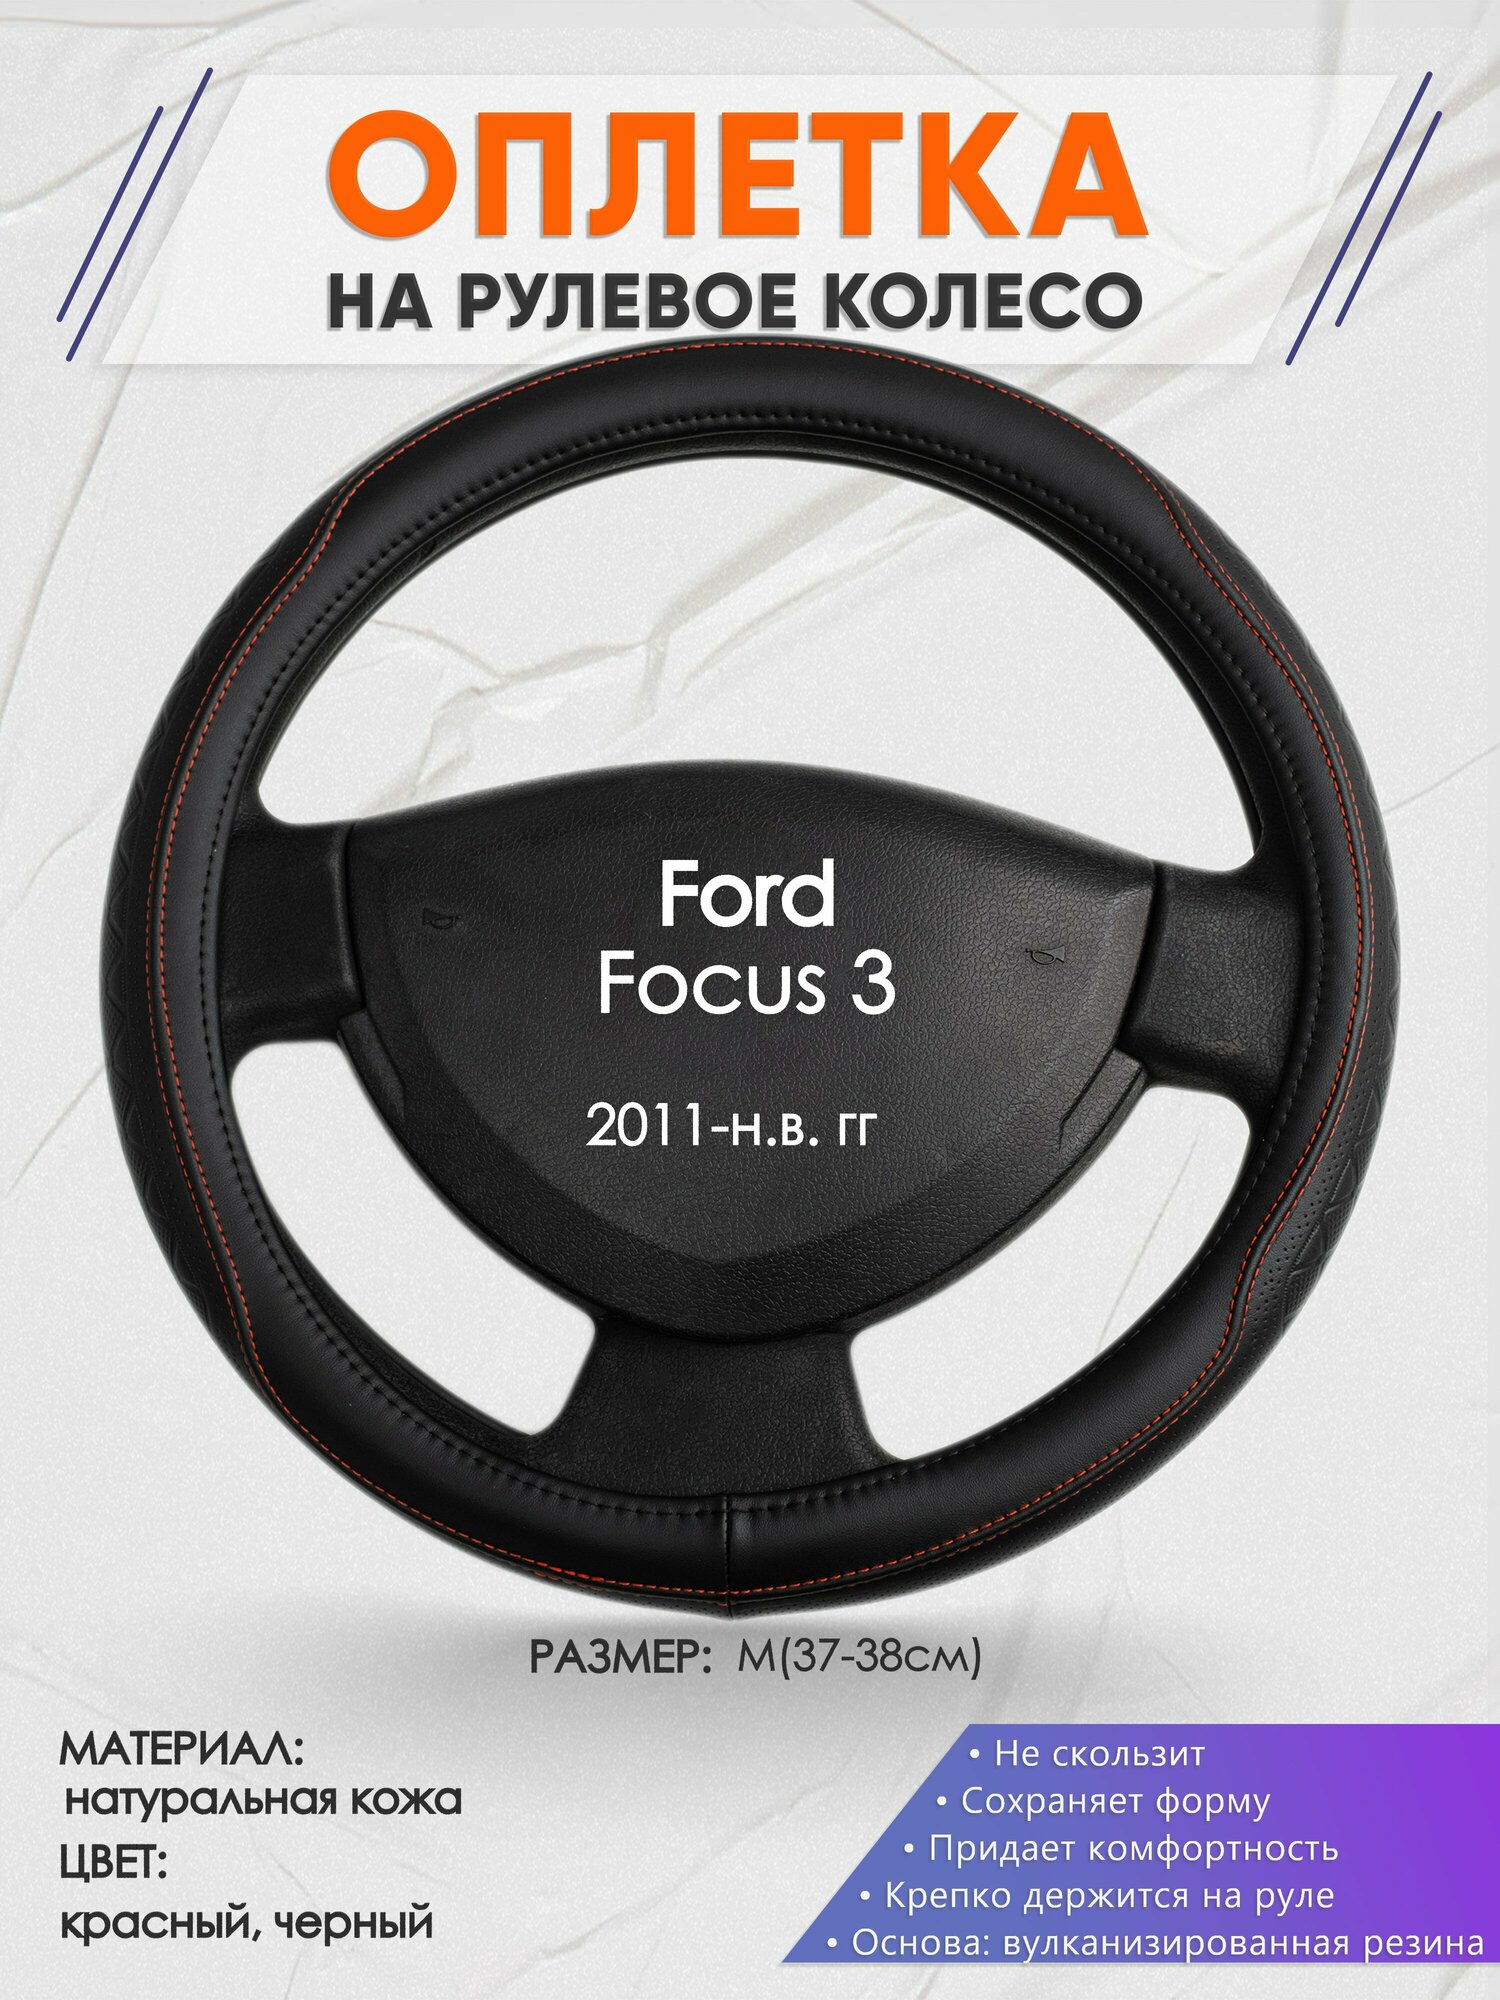 Оплетка на руль для Ford Focus 3(Форд Фокус 3) 2011-н. в, M(37-38см), Натуральная кожа 90